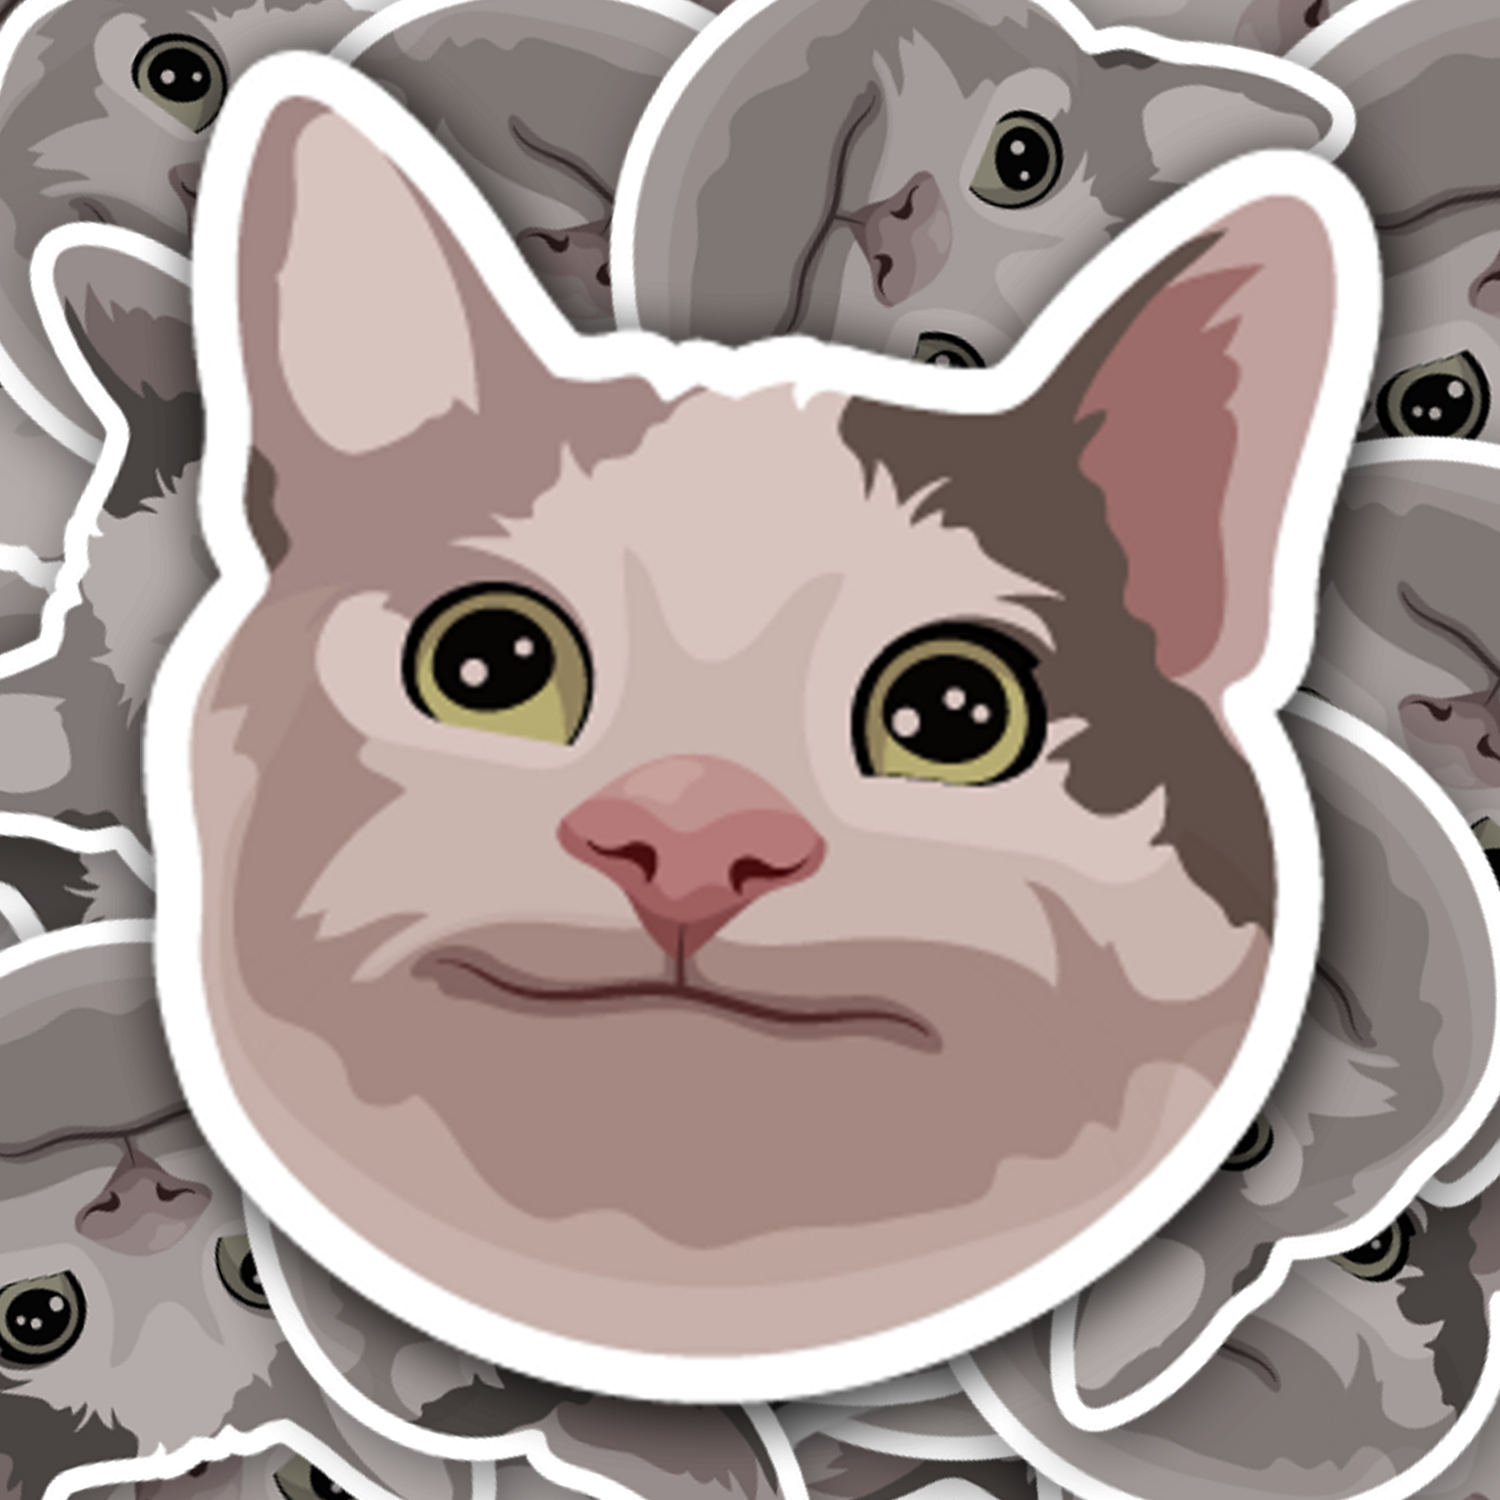 Polite Cat Meme Sticker - Turbo Vinyl